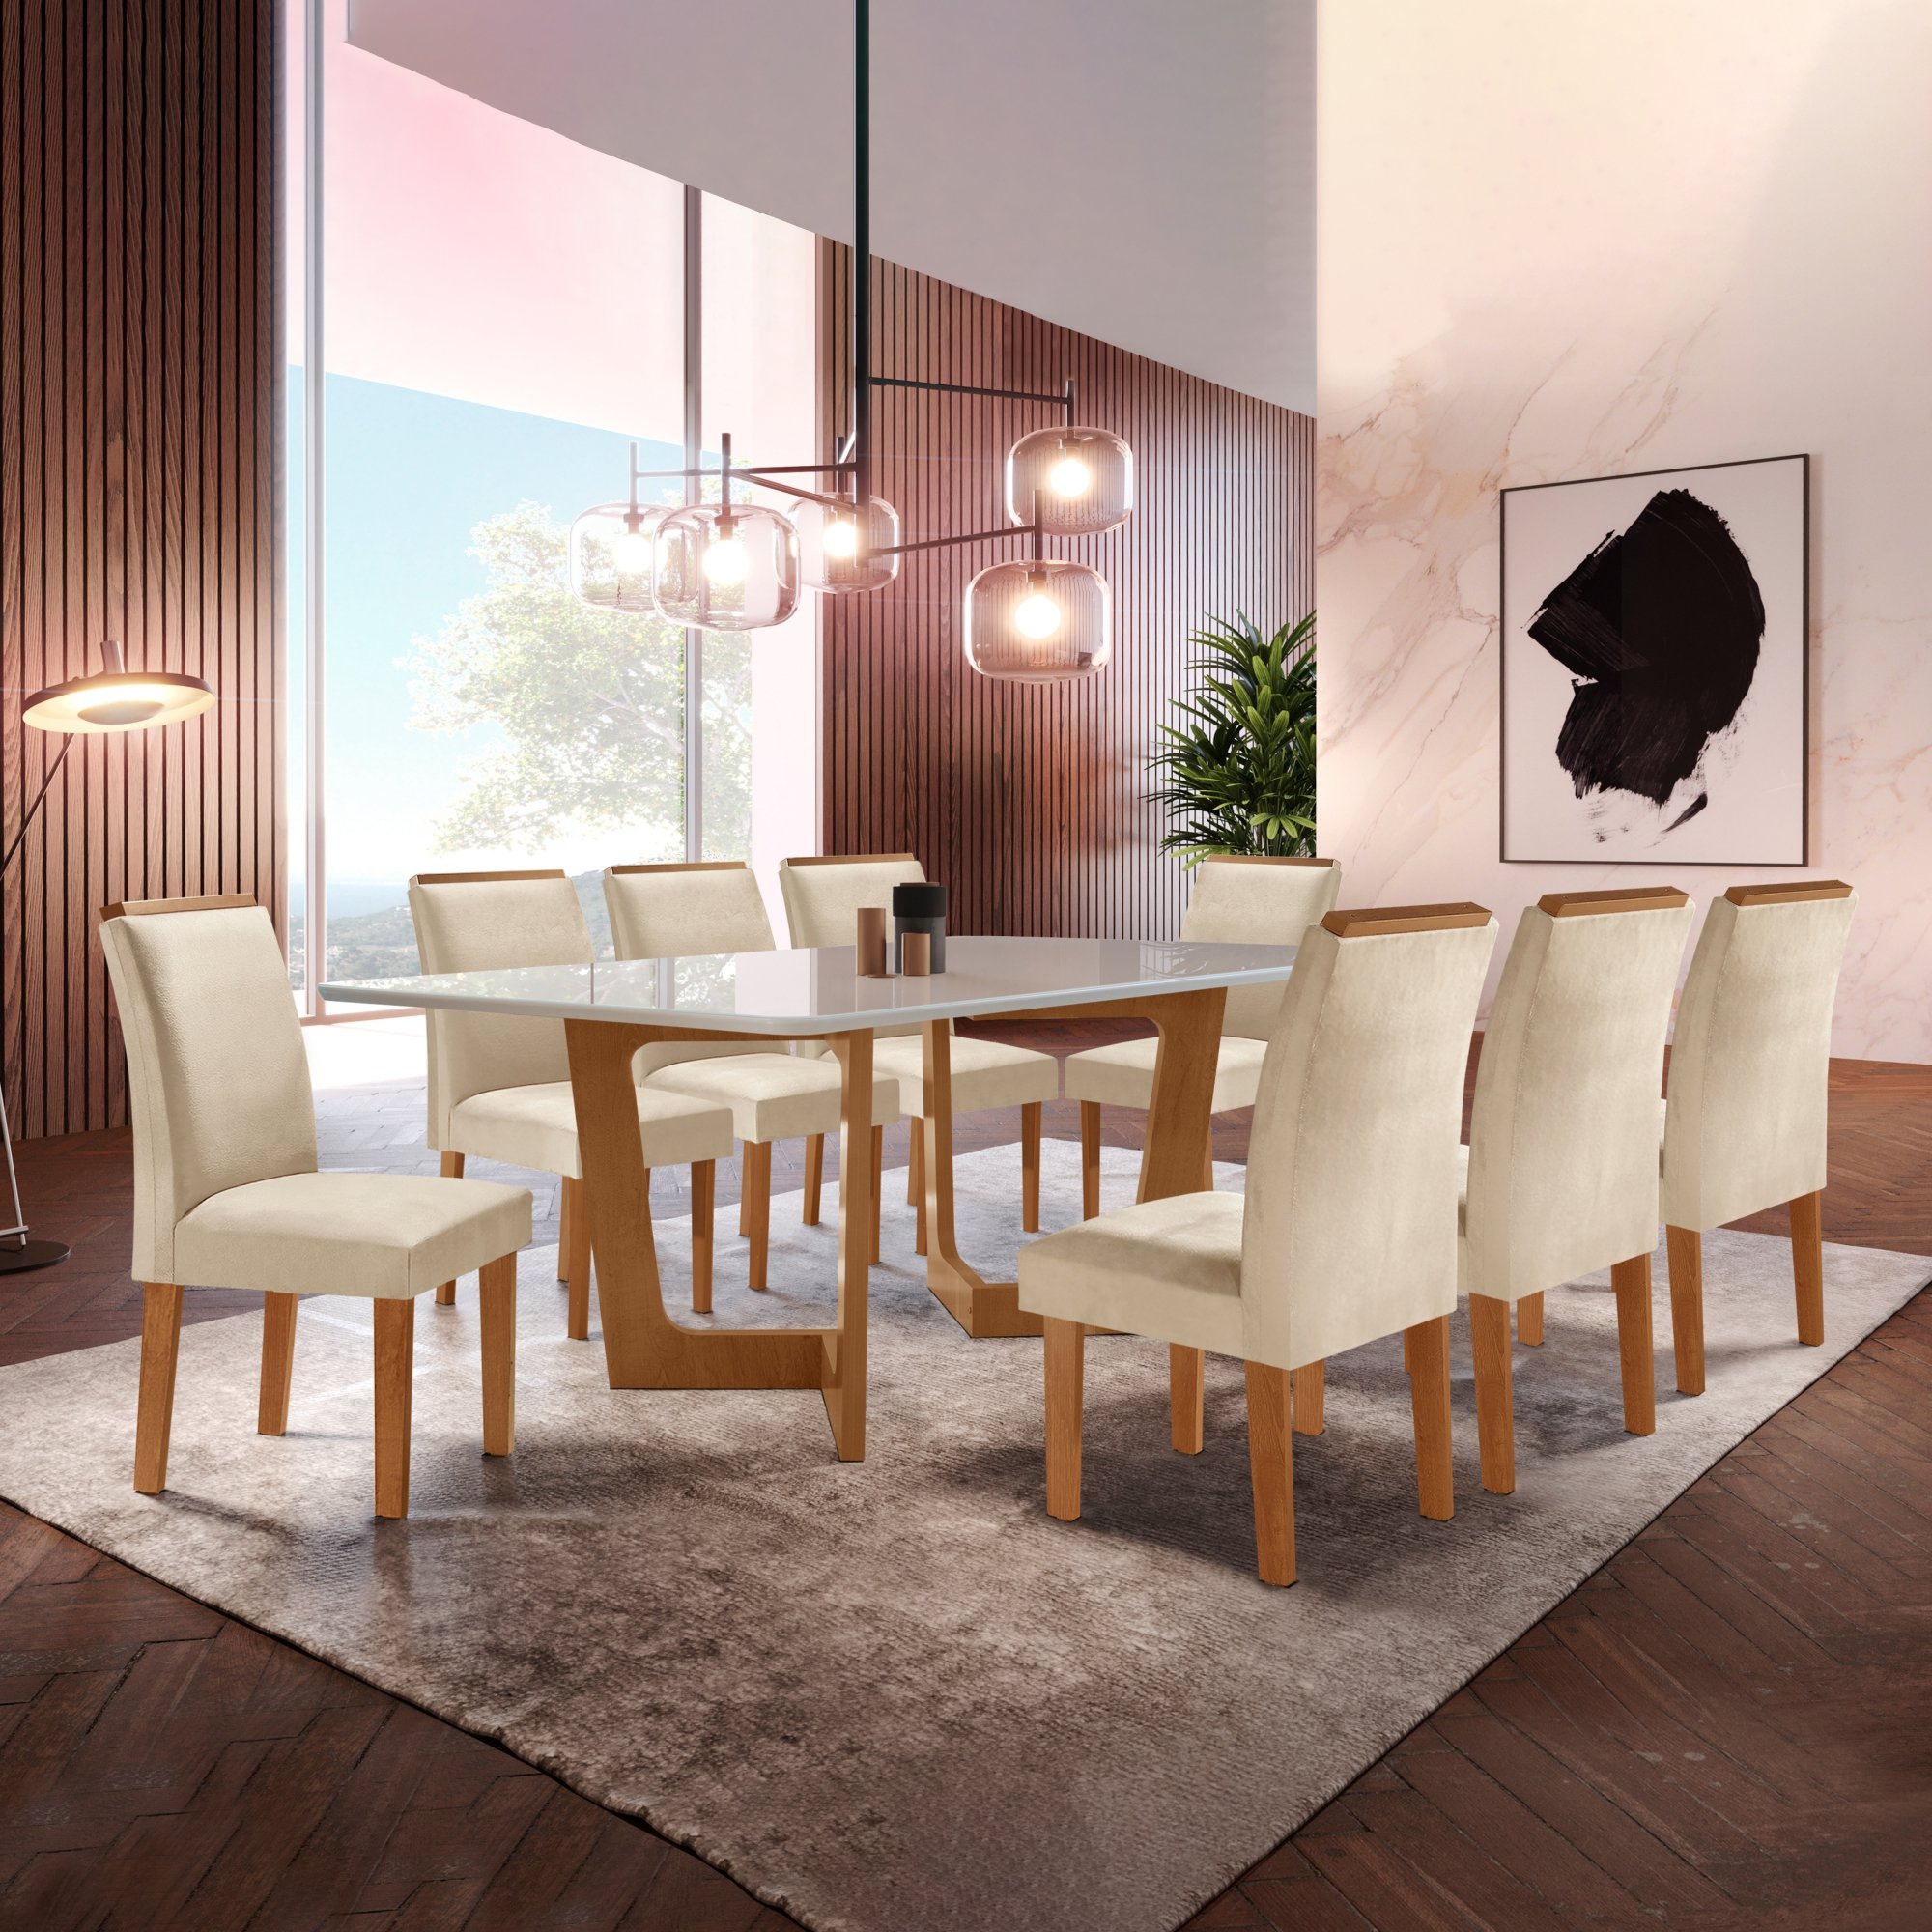 Conjunto Sala De Jantar Nápoles Tampo Vidro/MDF com 8 Cadeiras Luísa Smart Plus Cel Móveis